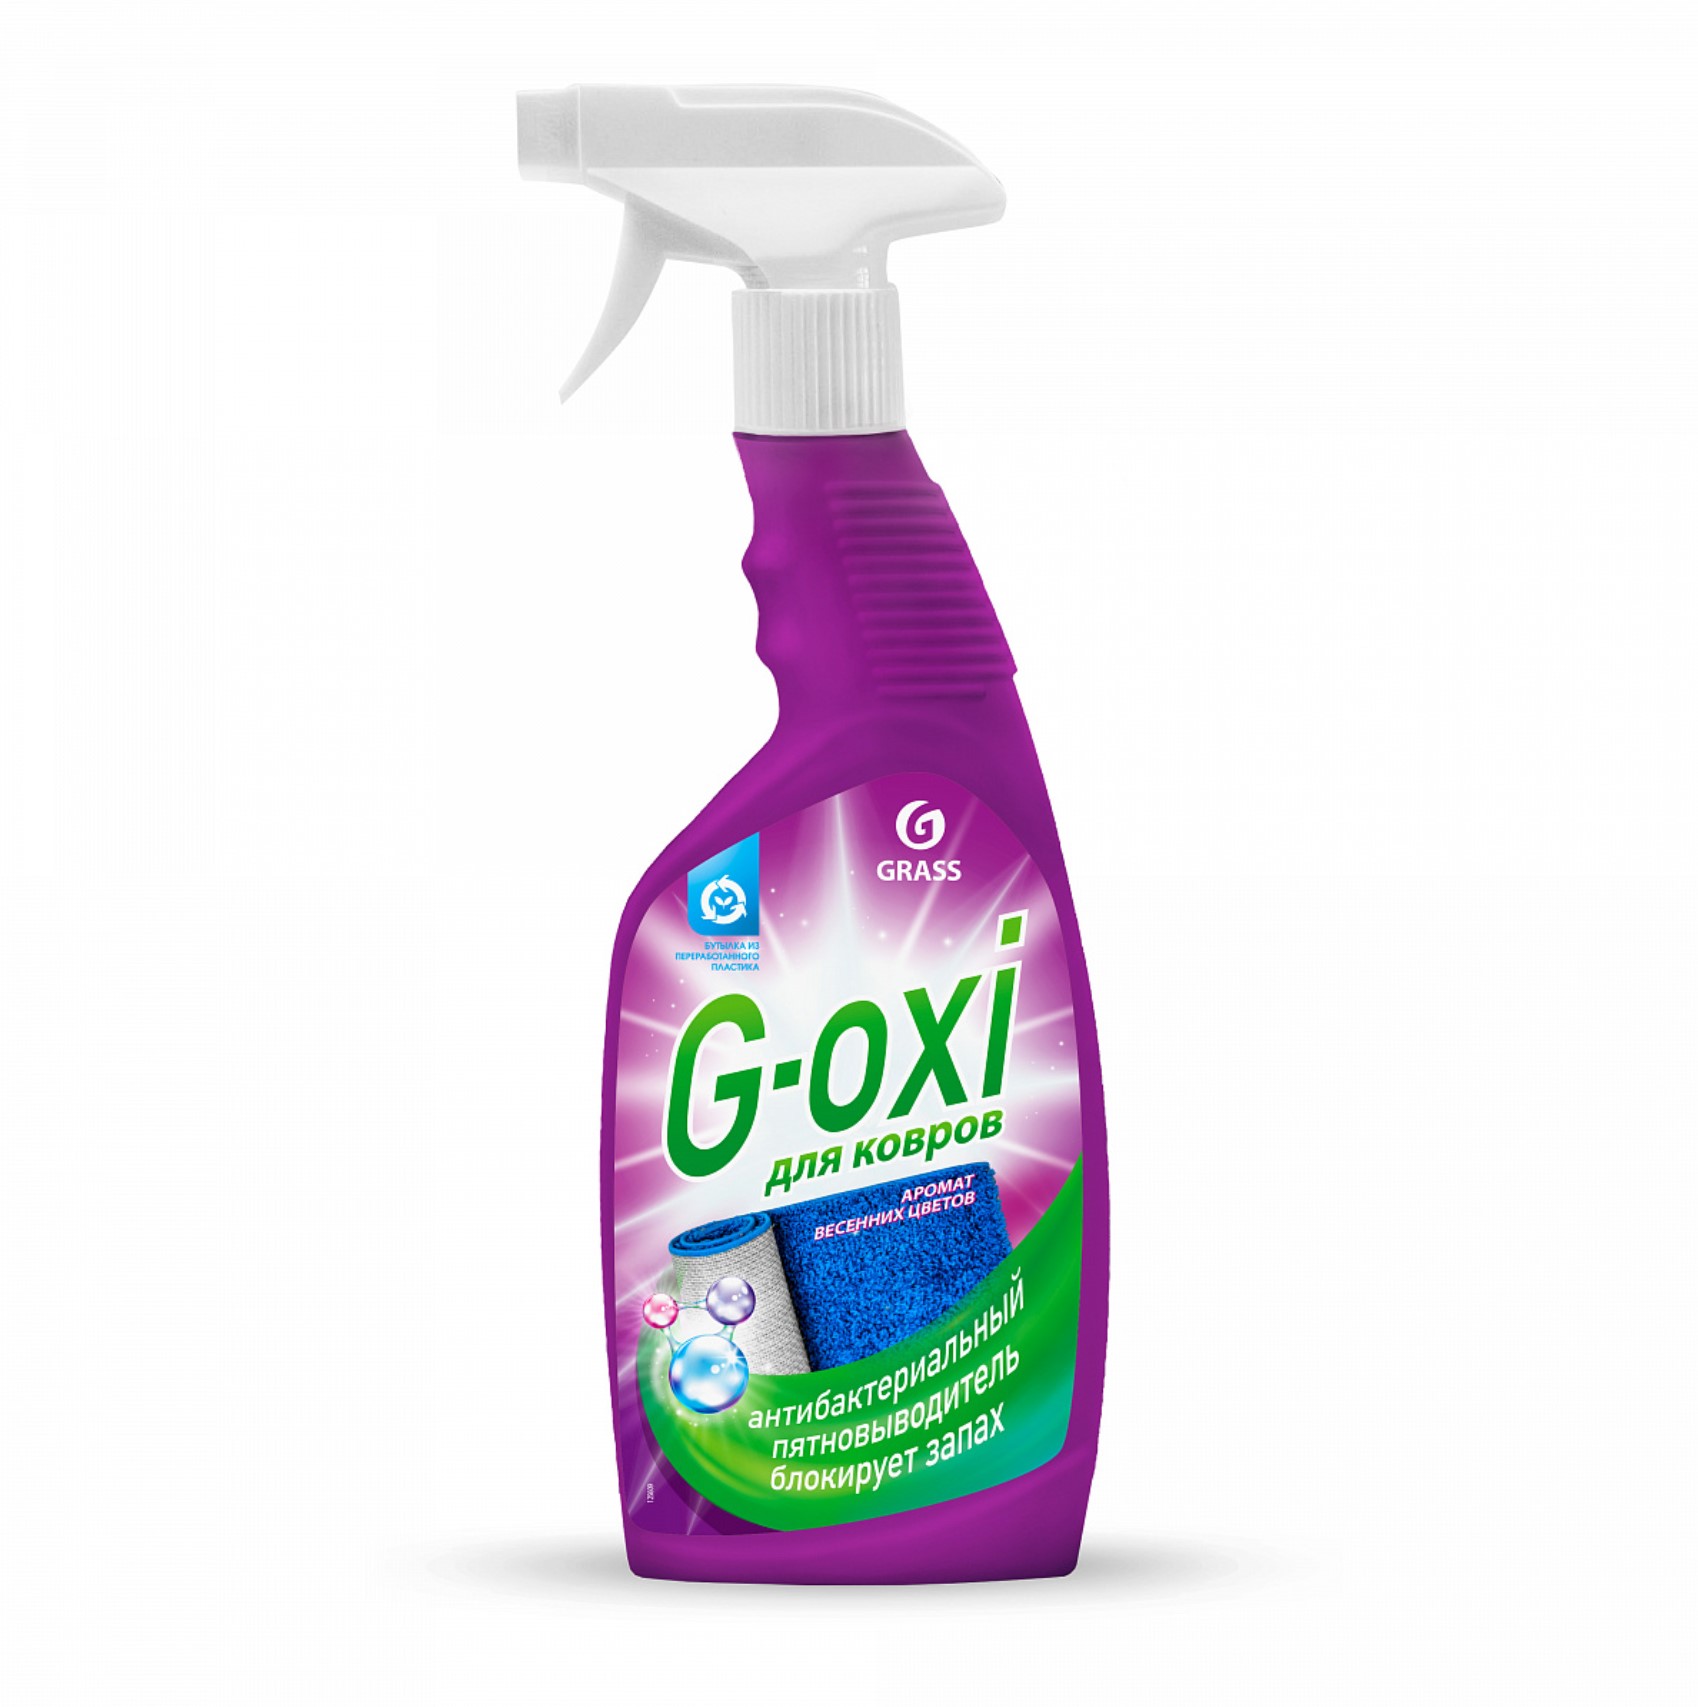 G Oxi пятновыводитель grass